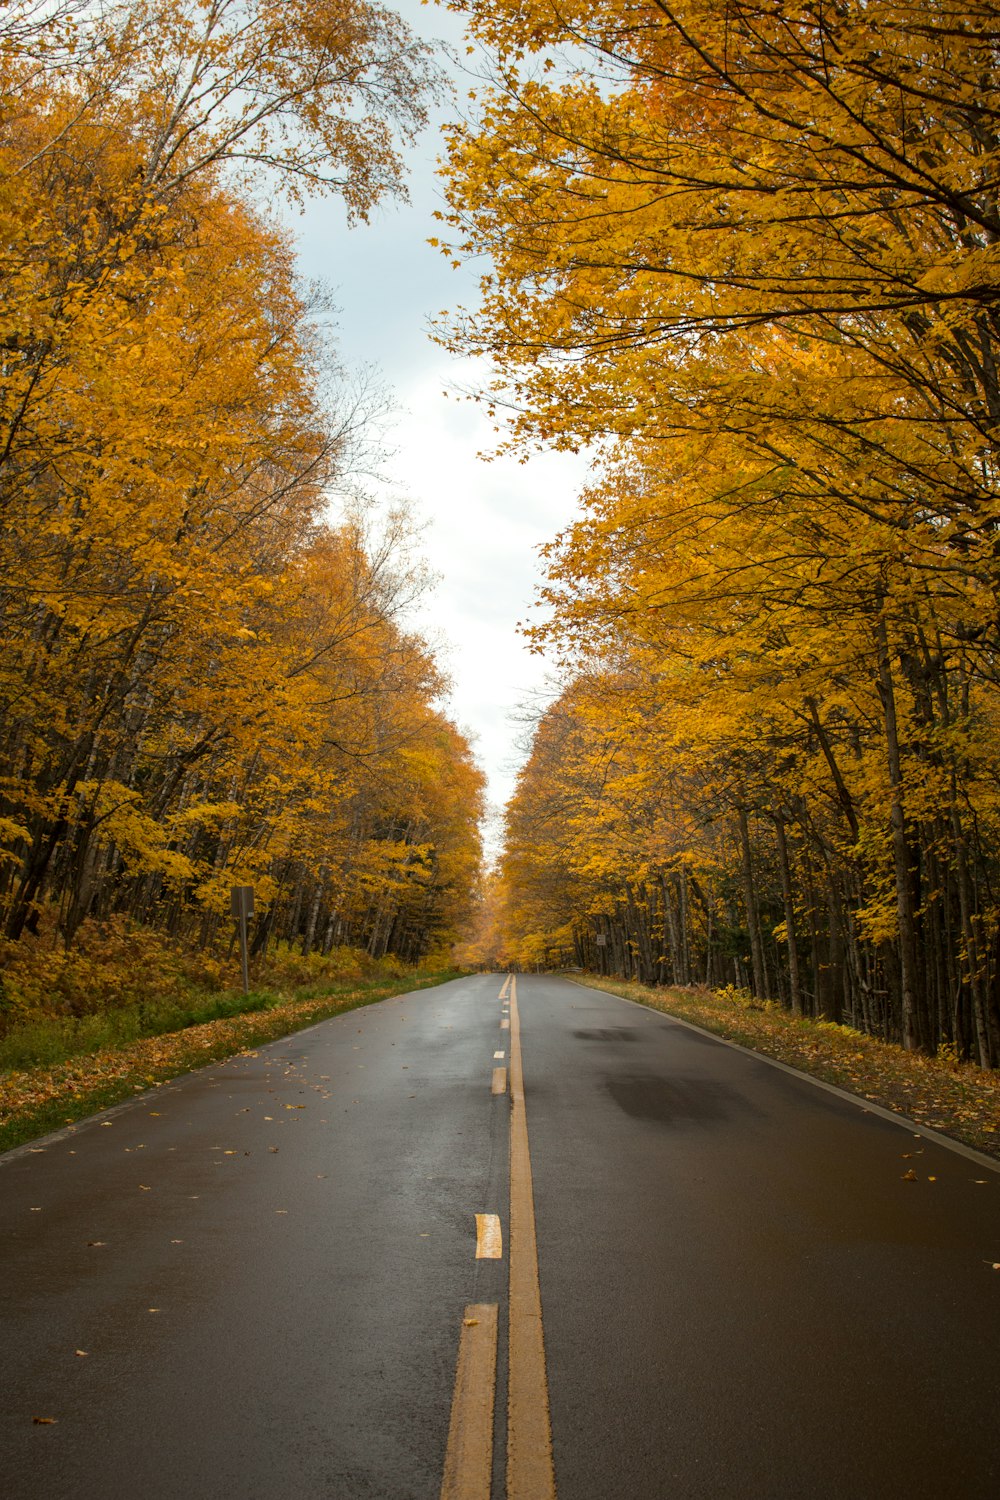 Une route vide entourée d’arbres aux feuilles jaunes